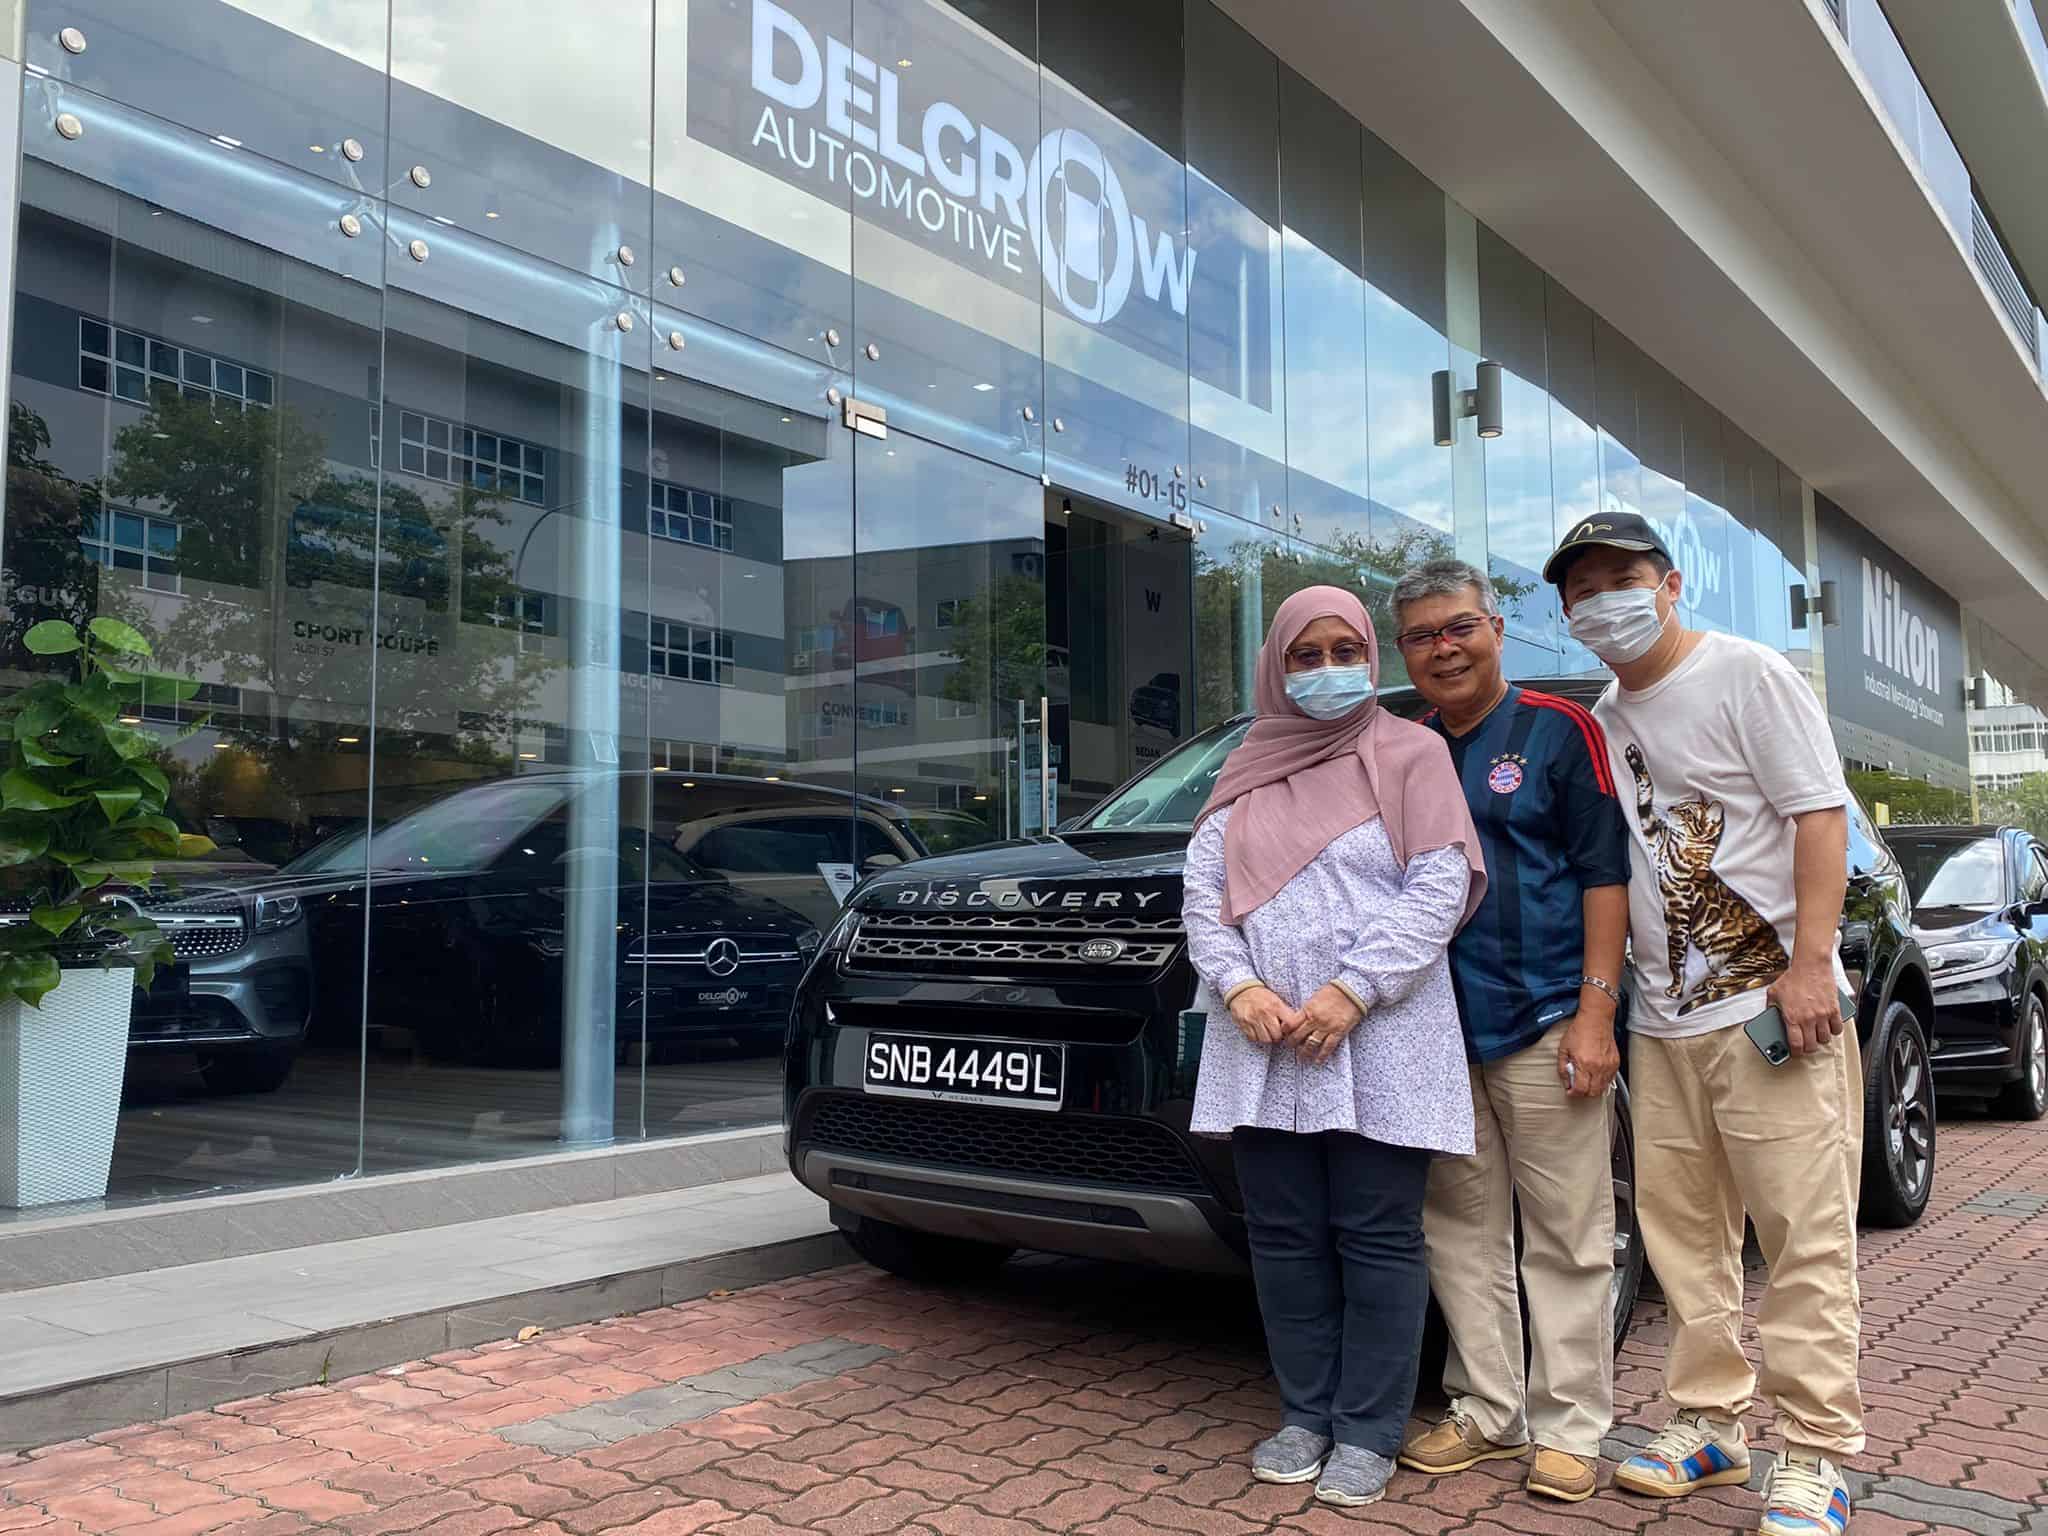 Delgrow Automotive Car Dealership Singapore